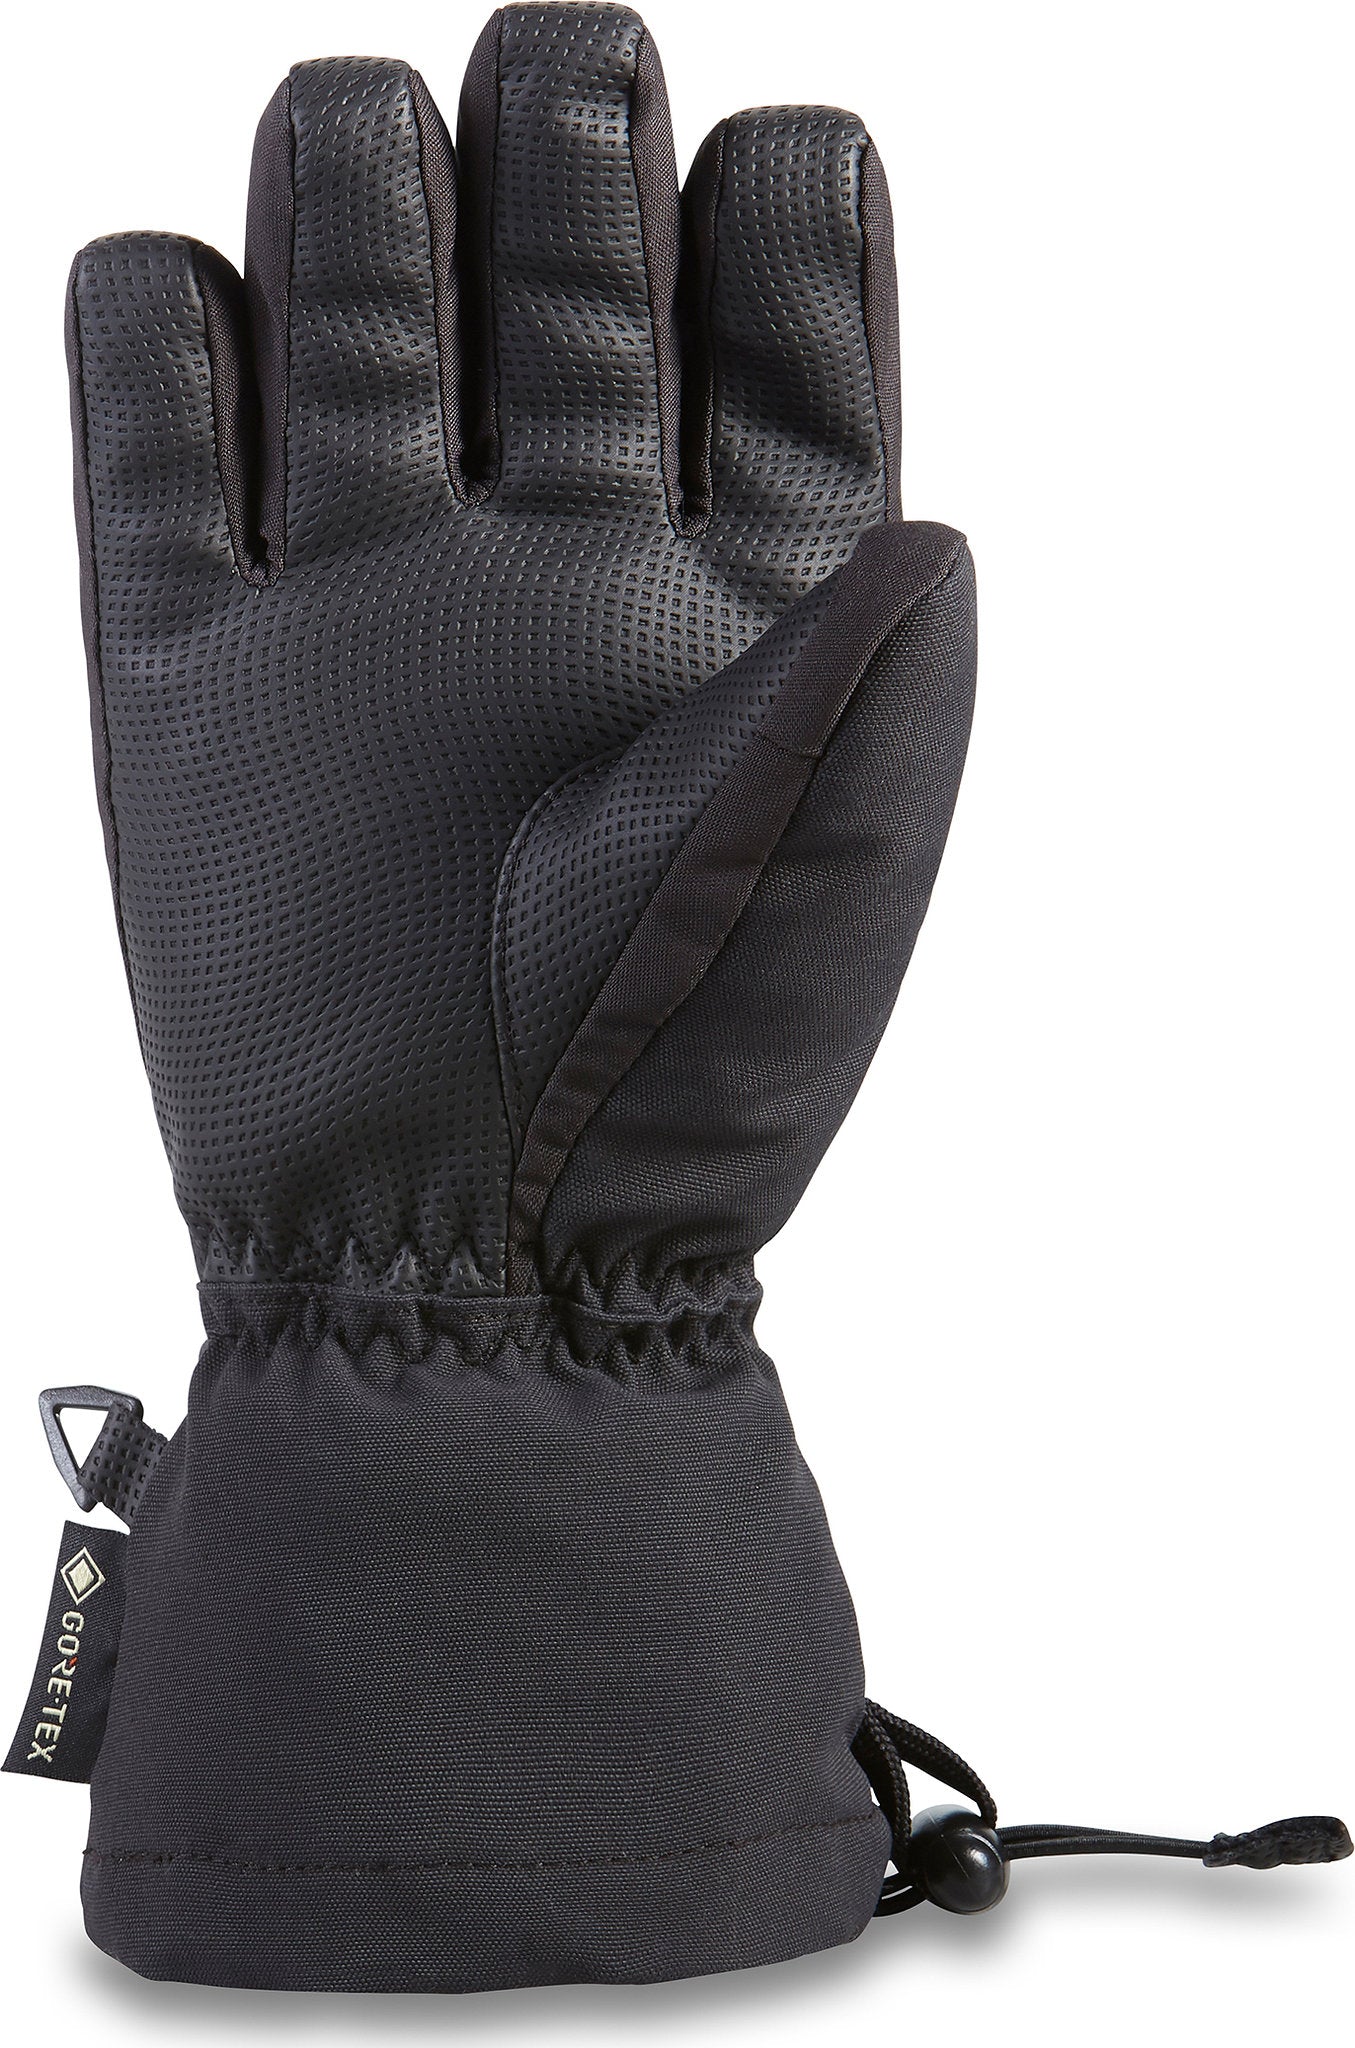 Dakine Avenger GORE-TEX Gloves - Kids